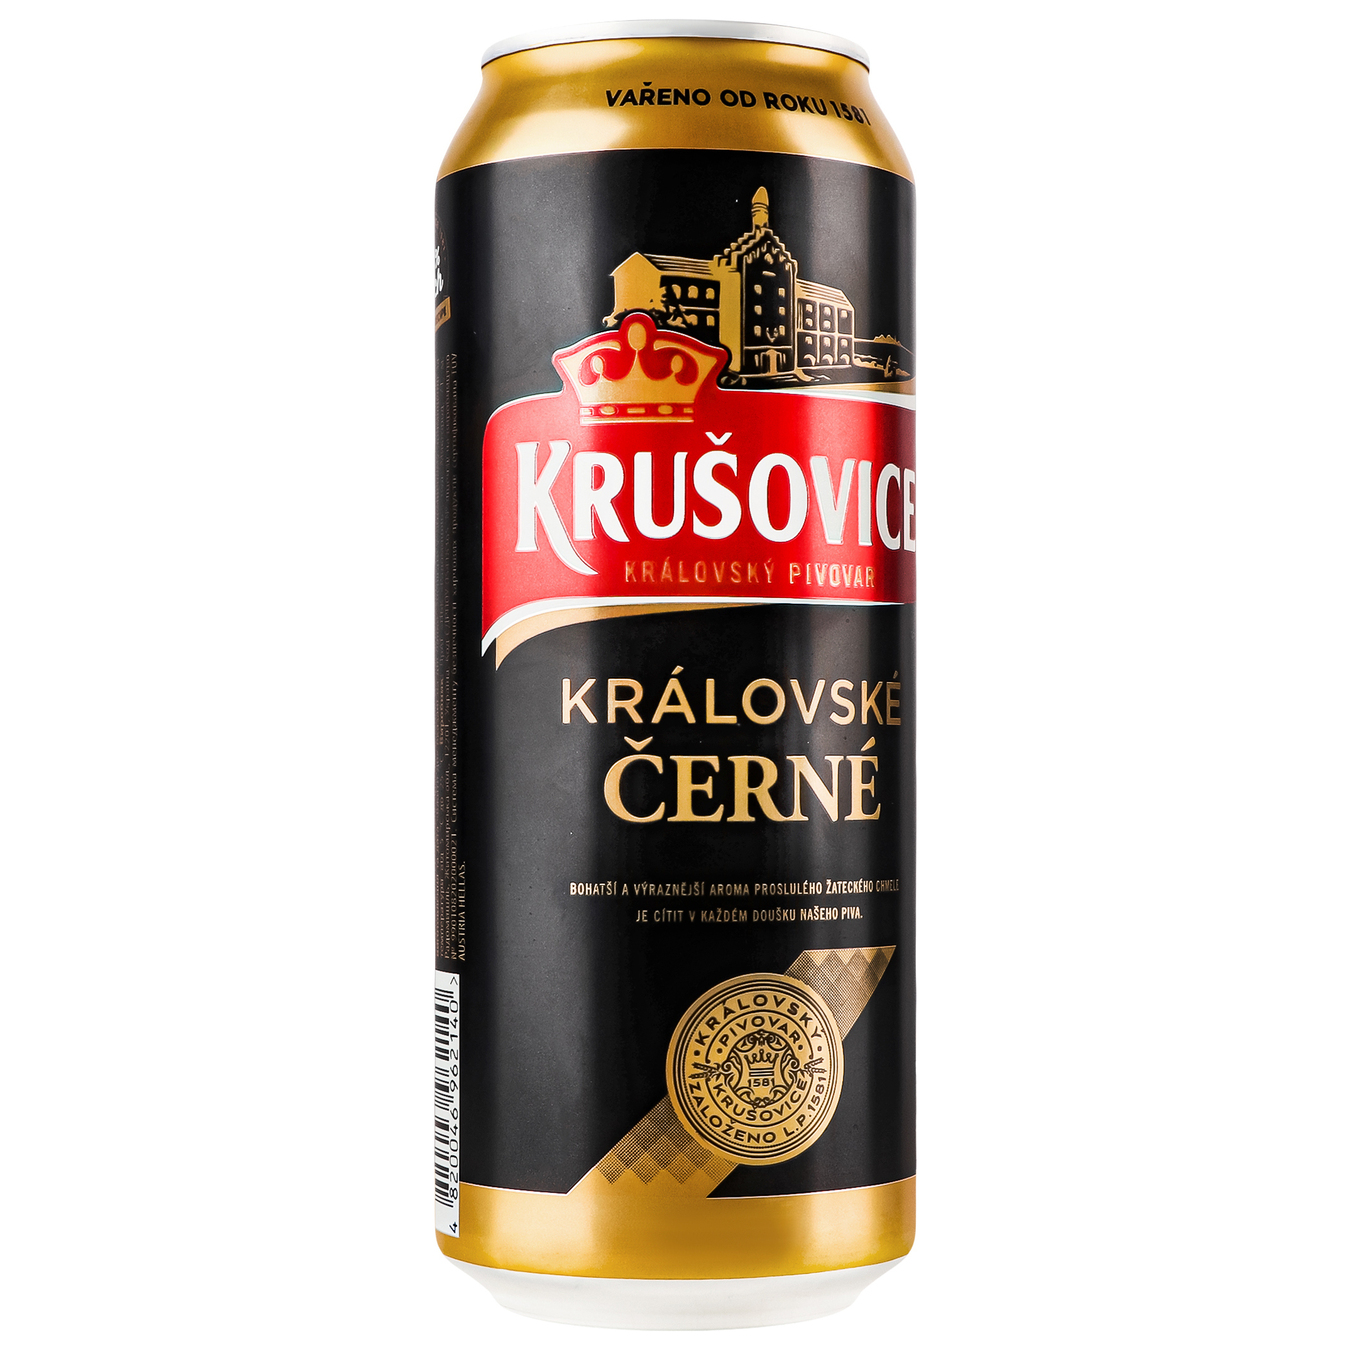 Krusovice Cerne Dark beer 3,8% 0,5l 2